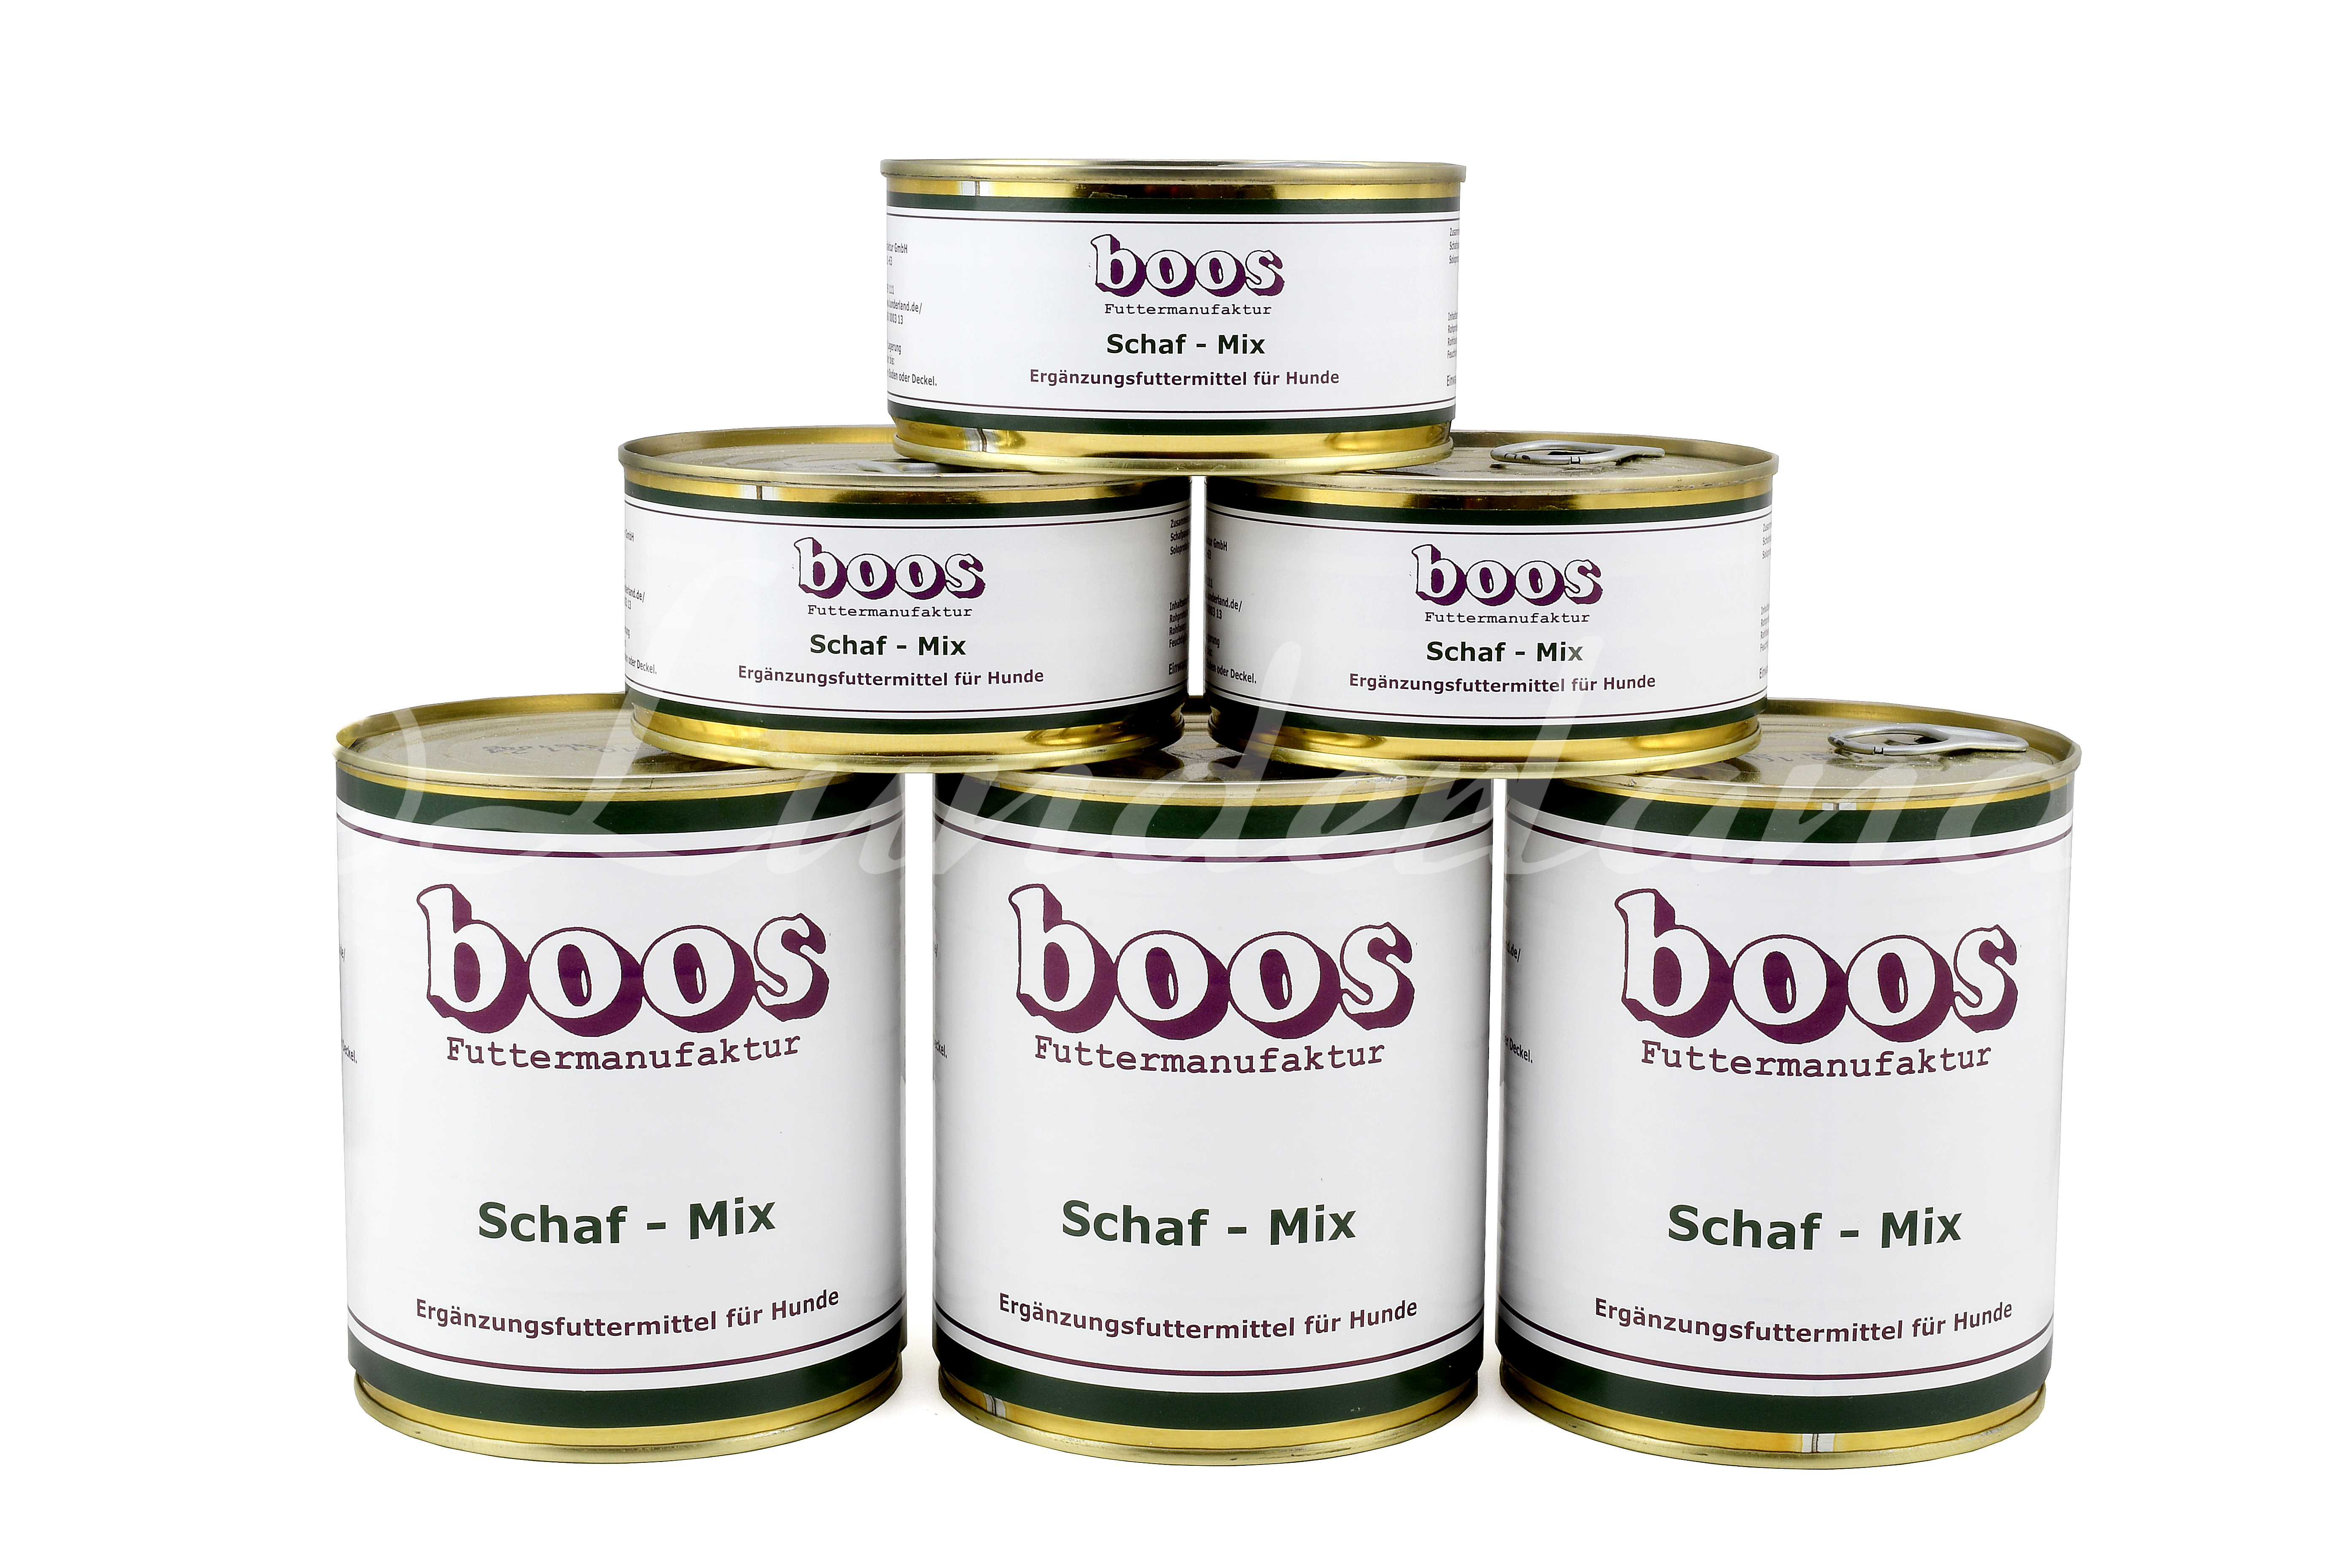 Boos Reinfleisch Schaf-Mix